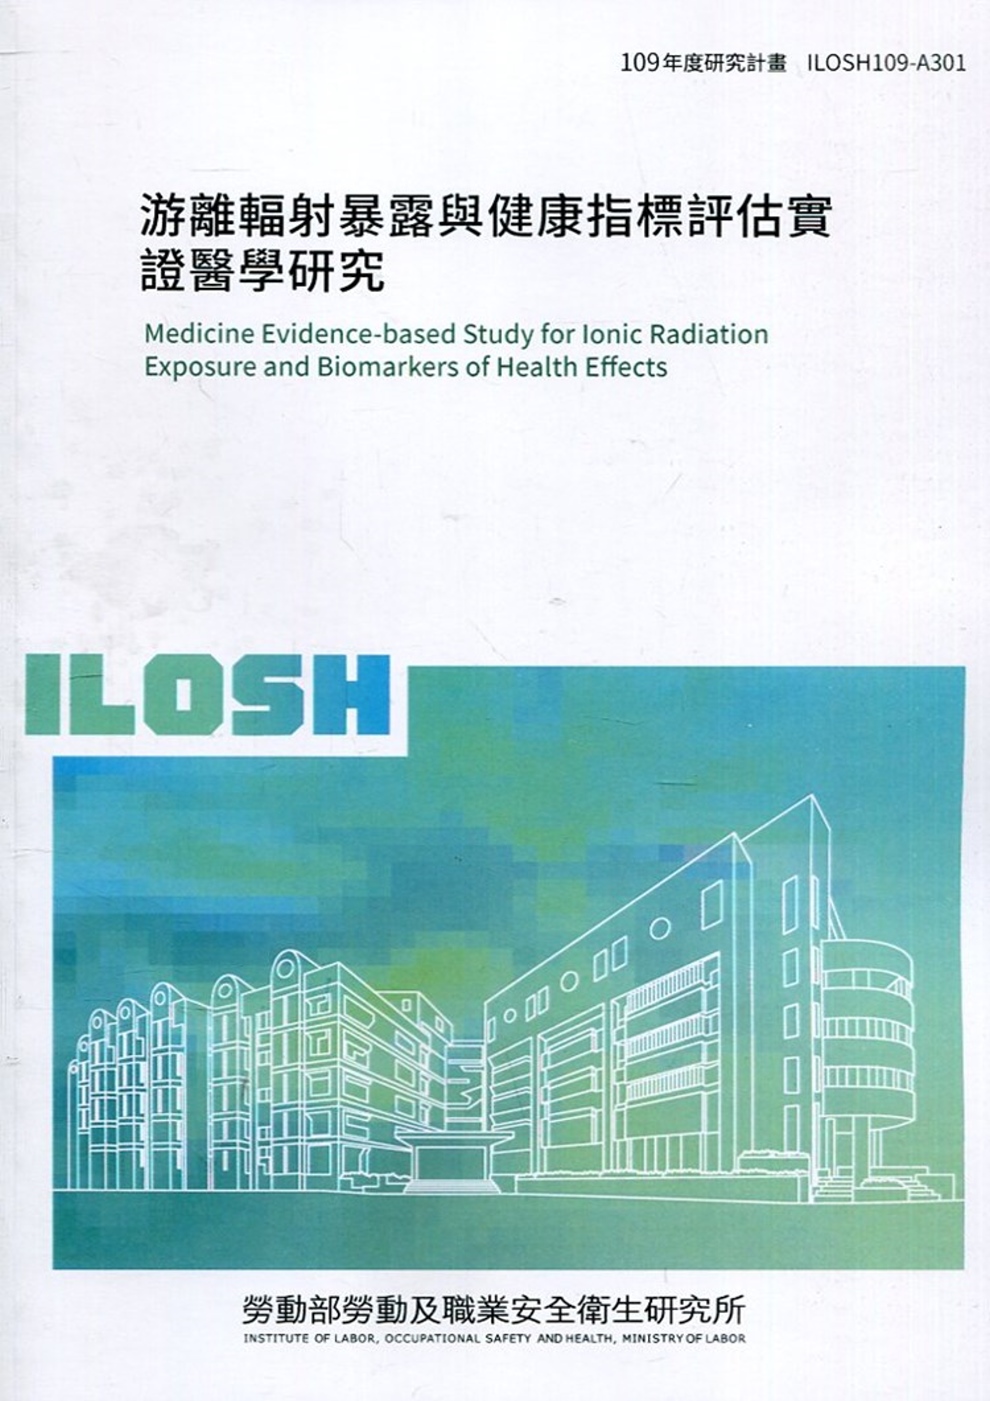 游離輻射暴露與健康指標評估實證醫學研究  ILOSH109-A301